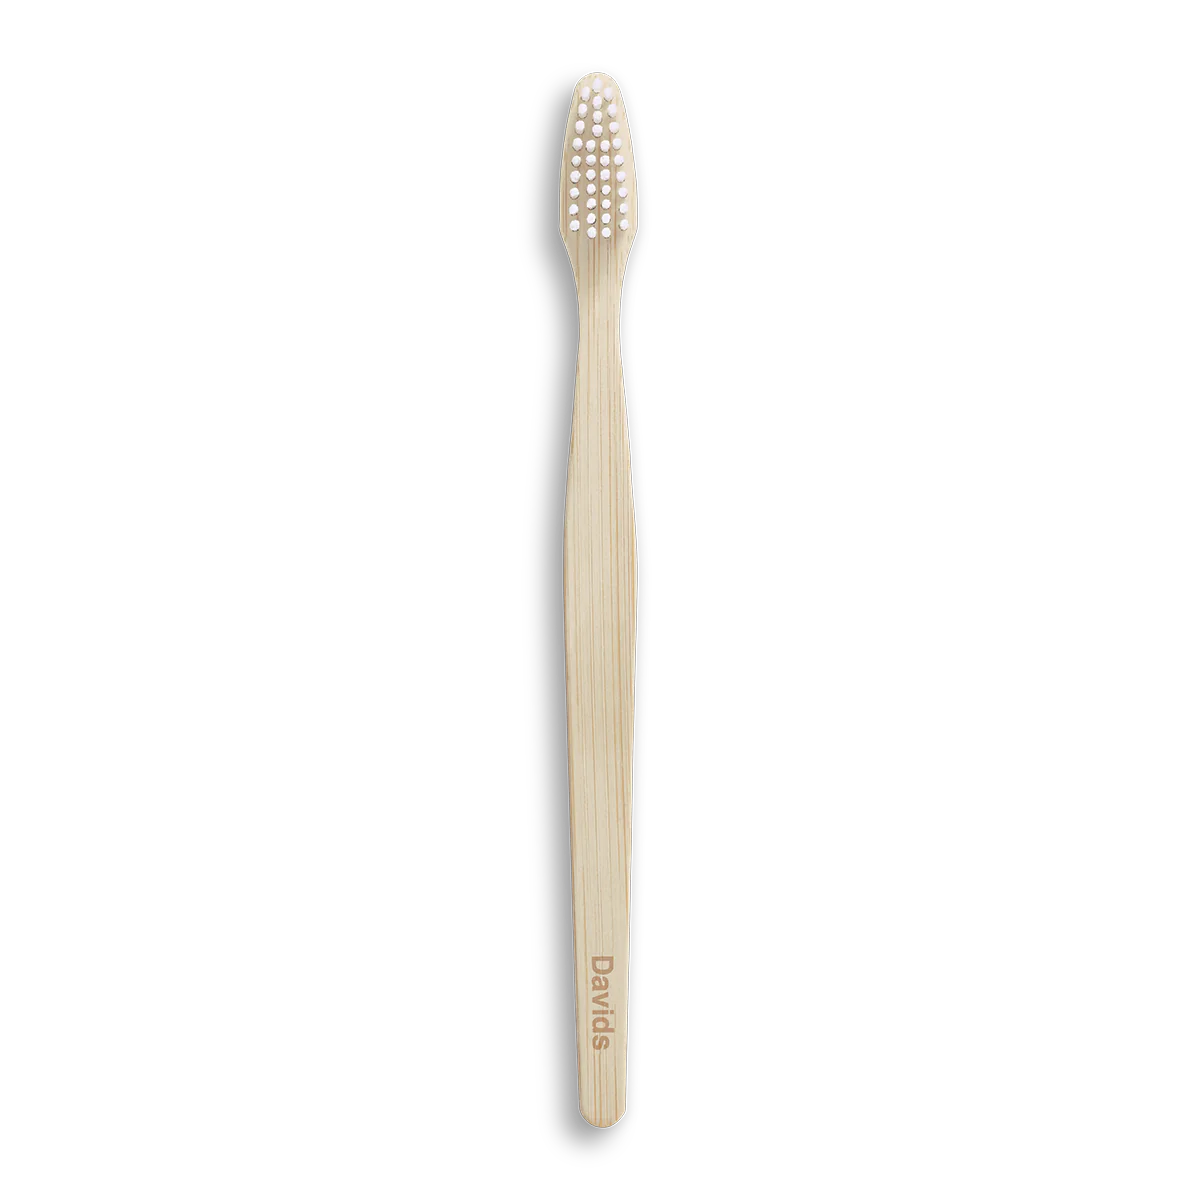 Davids | Premium Bamboo Toothbrush